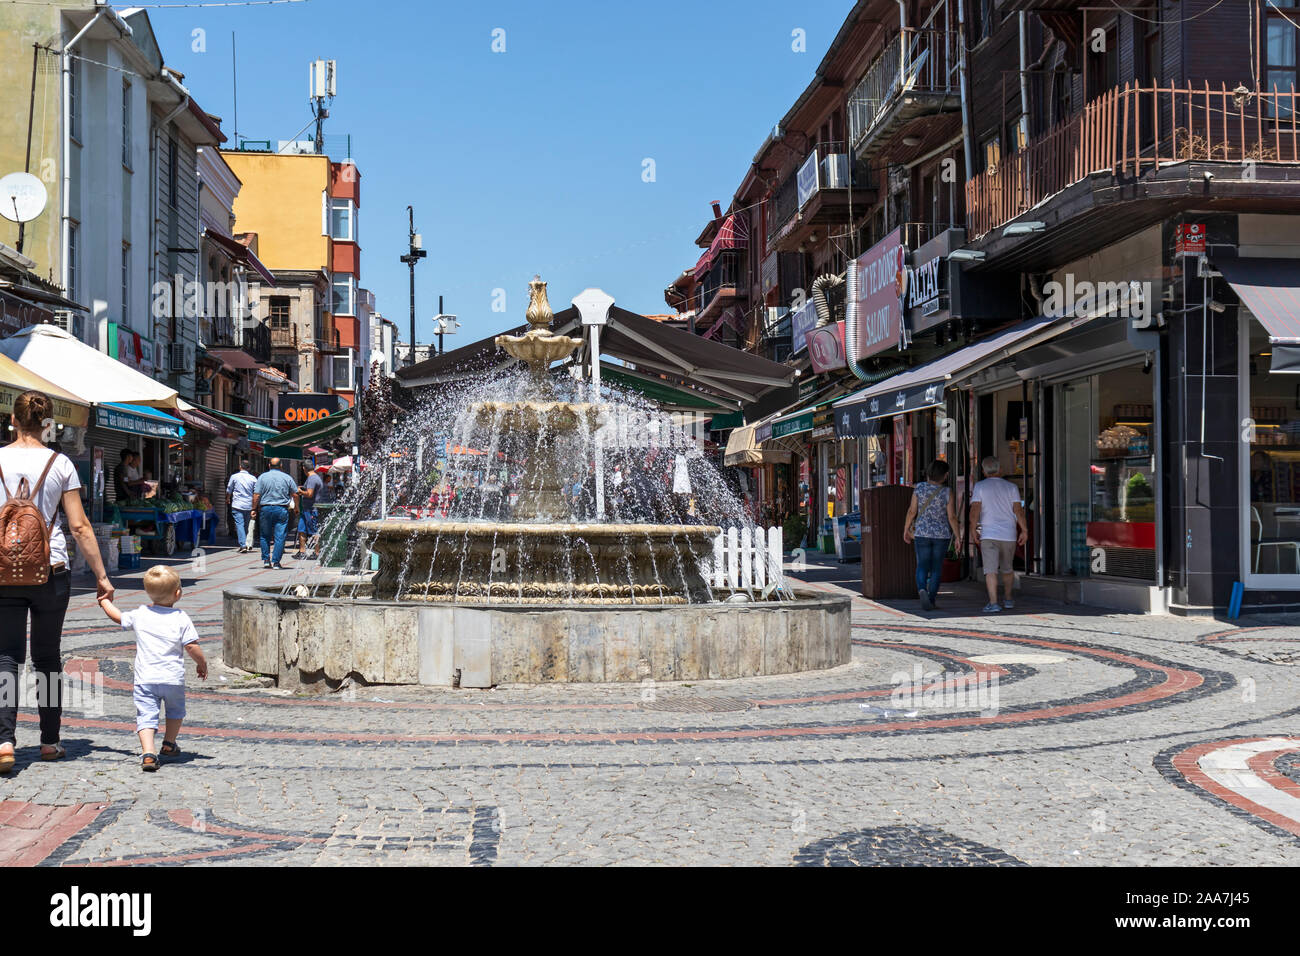 EDIRNE, Türkei - 28. JULI 2019: Einkaufen Fußgängerzone im Zentrum der Stadt Edirne, Osten Thrakien, Türkei Stockfoto